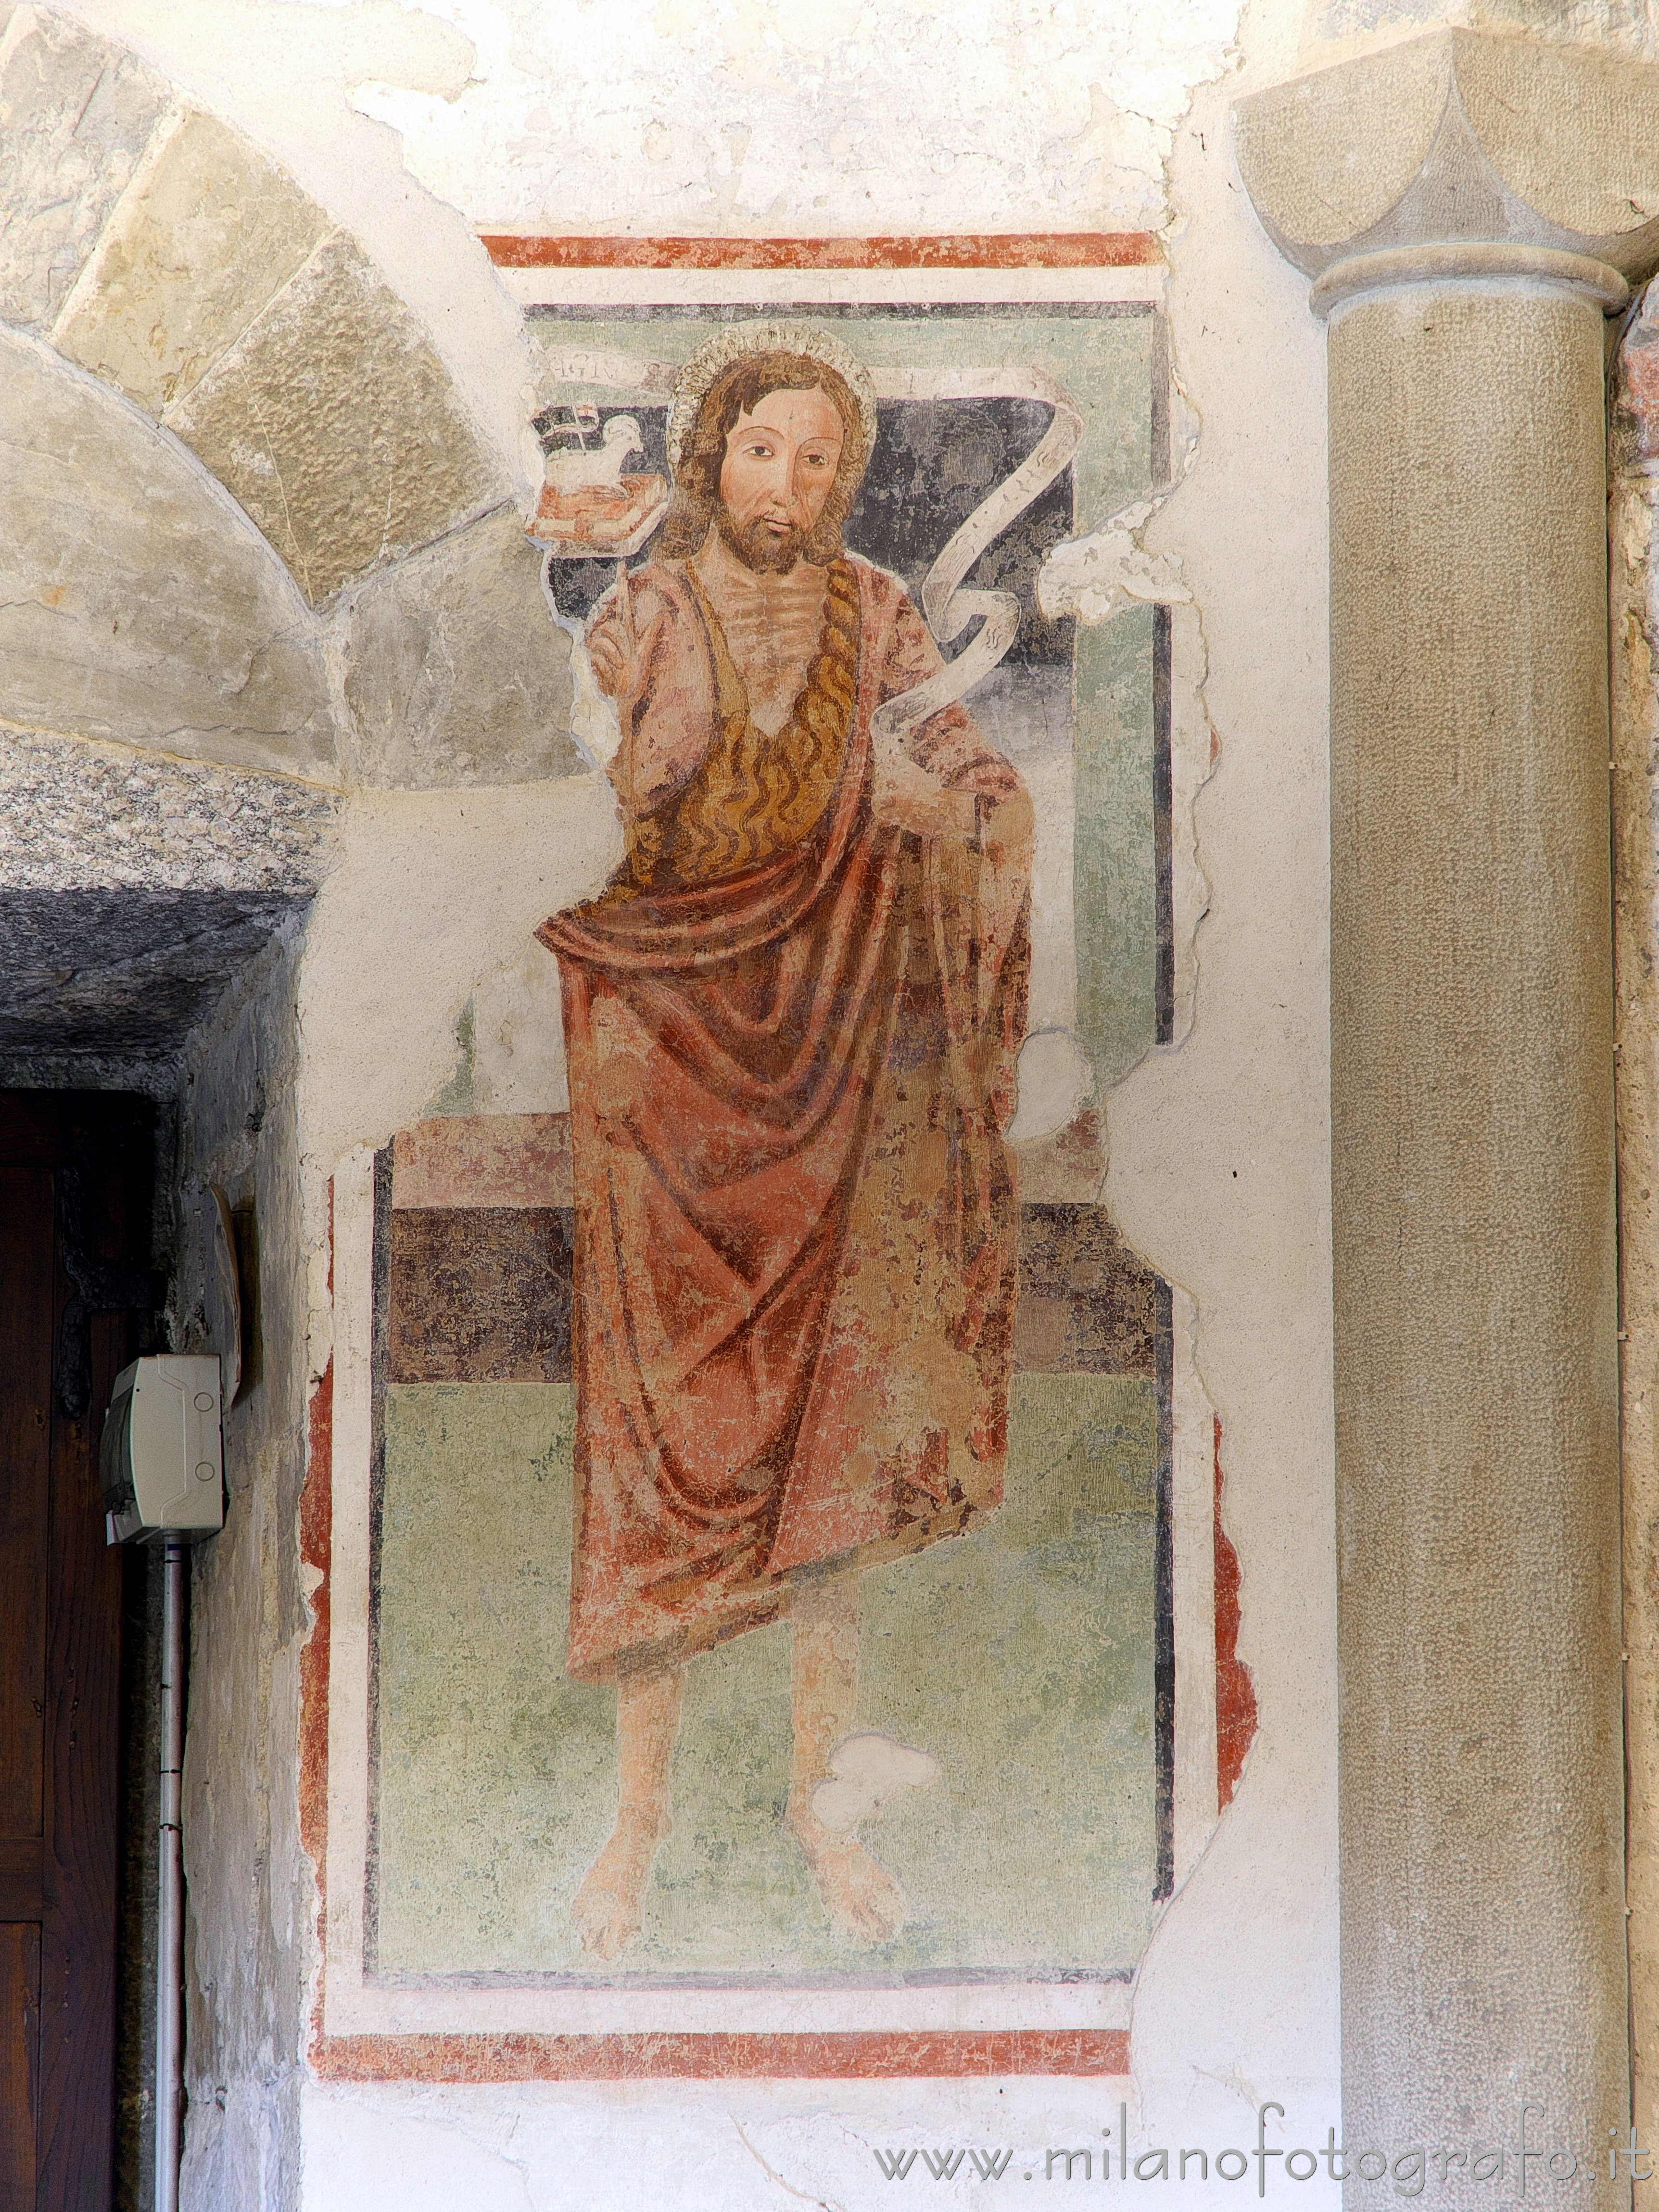 Oggiono (Lecco, Italy): Fresco of the dedicatee saint in the Baptistery of St. John Baptist - Oggiono (Lecco, Italy)